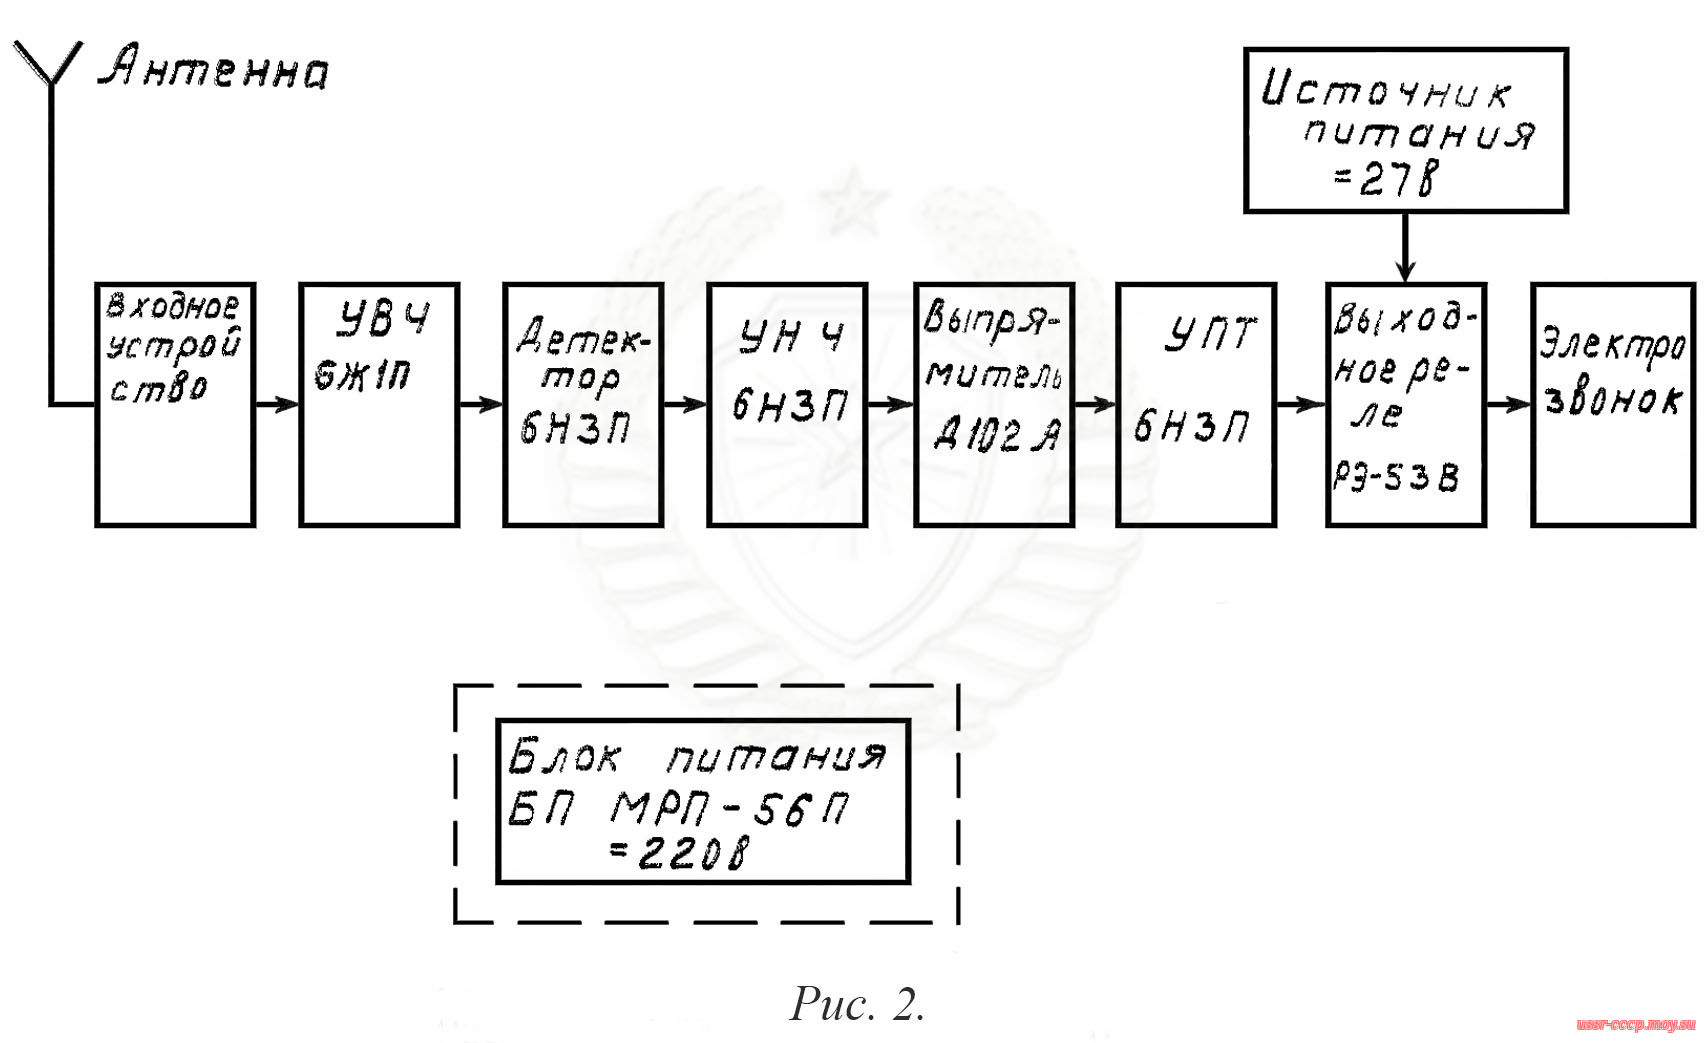 Рис. 2. Блок-схема радиоприёмника МРП-56П